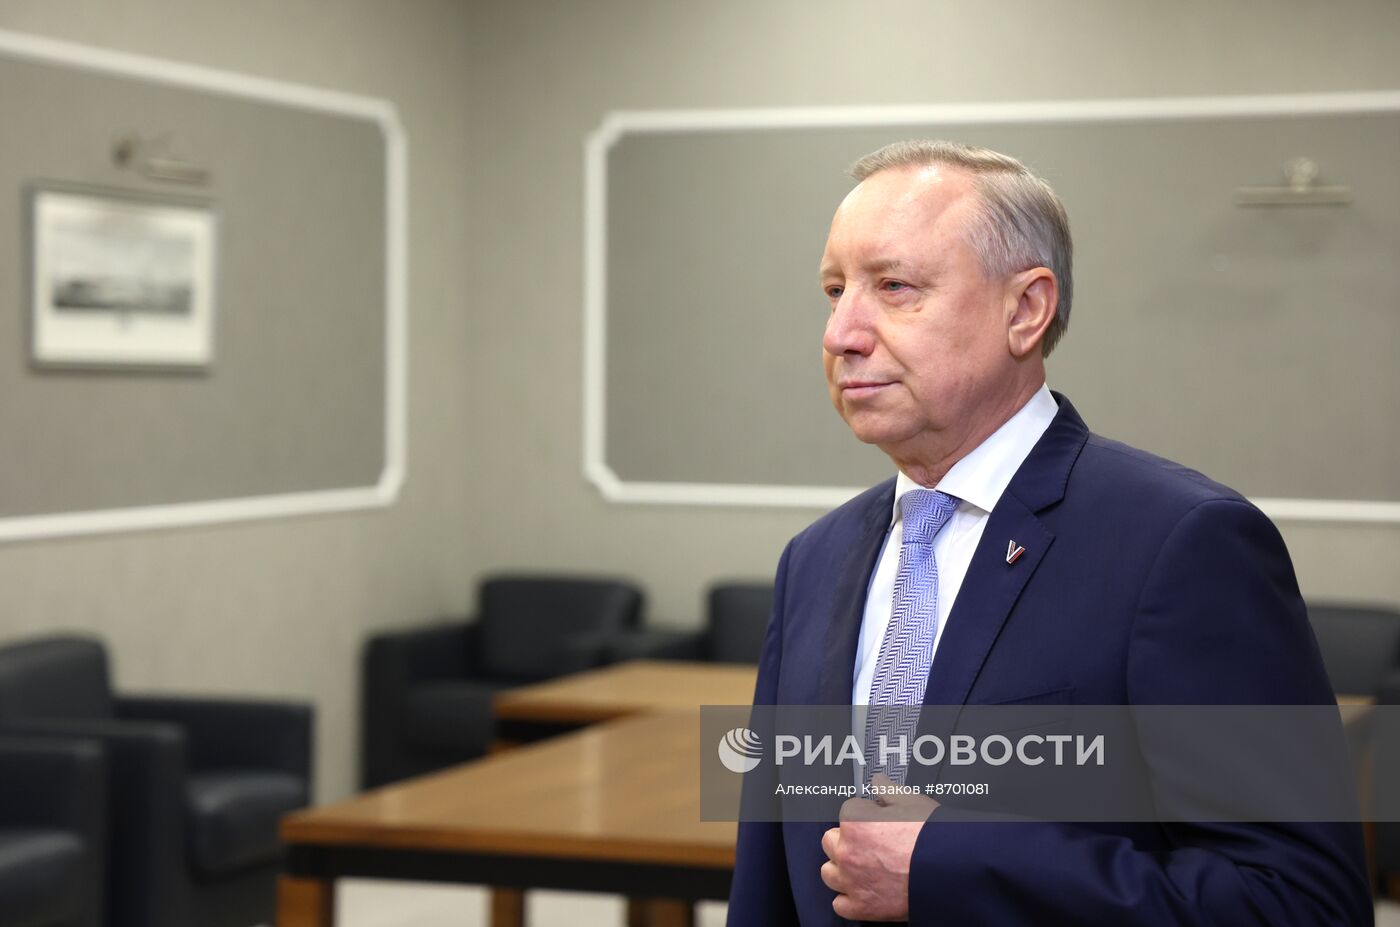  Президент Владимир Путин провел рабочую встречу с губернатором Санкт-Петербурга Александром Бегловым